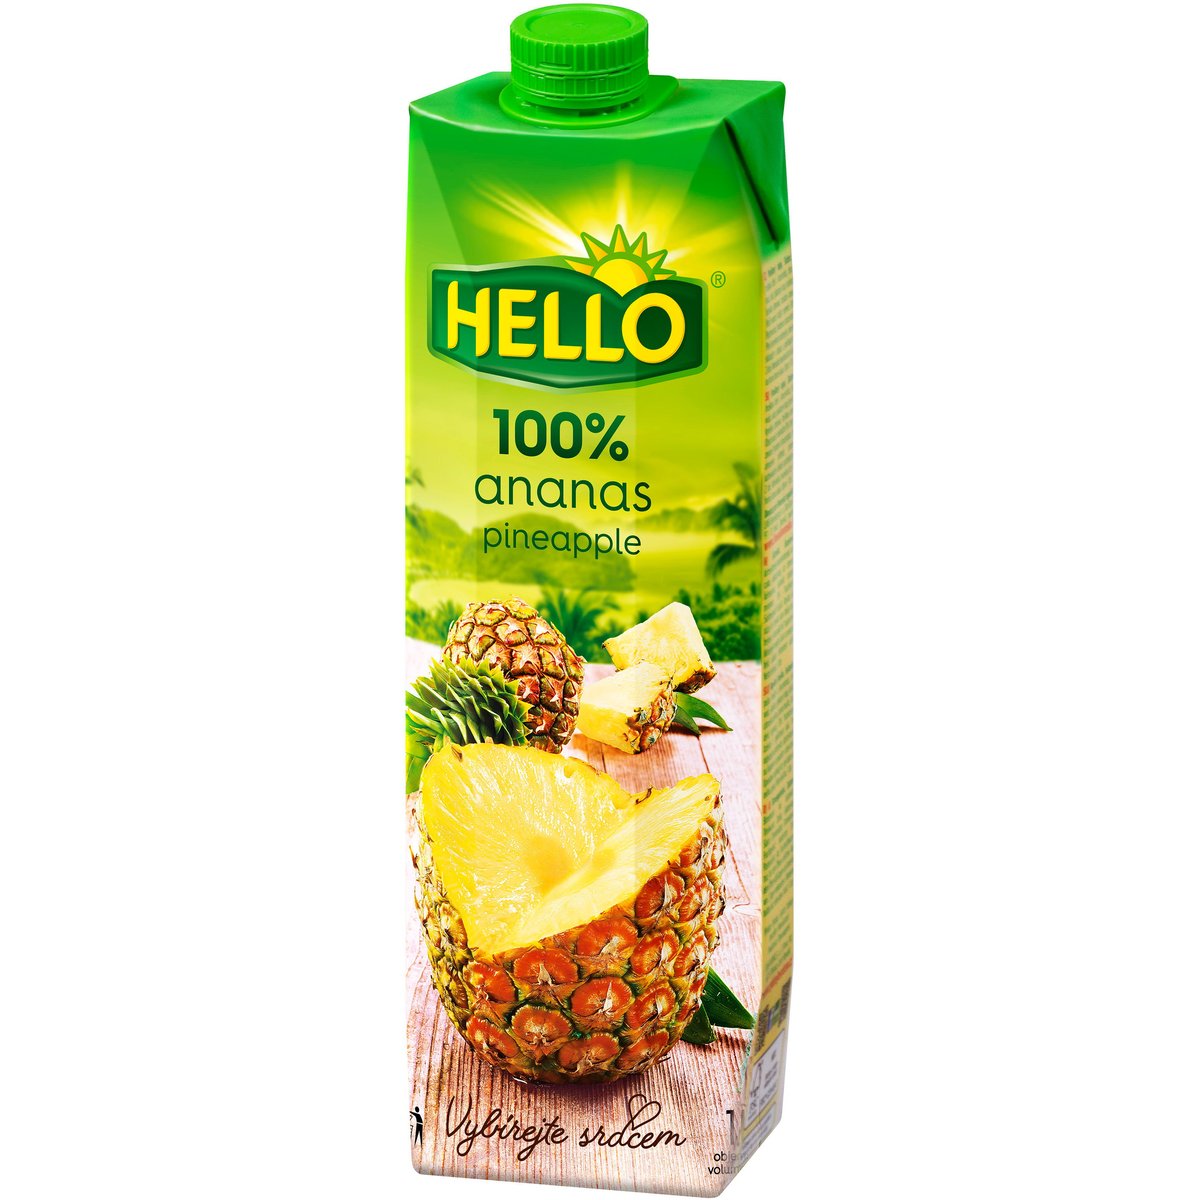 Hello 100% ananas